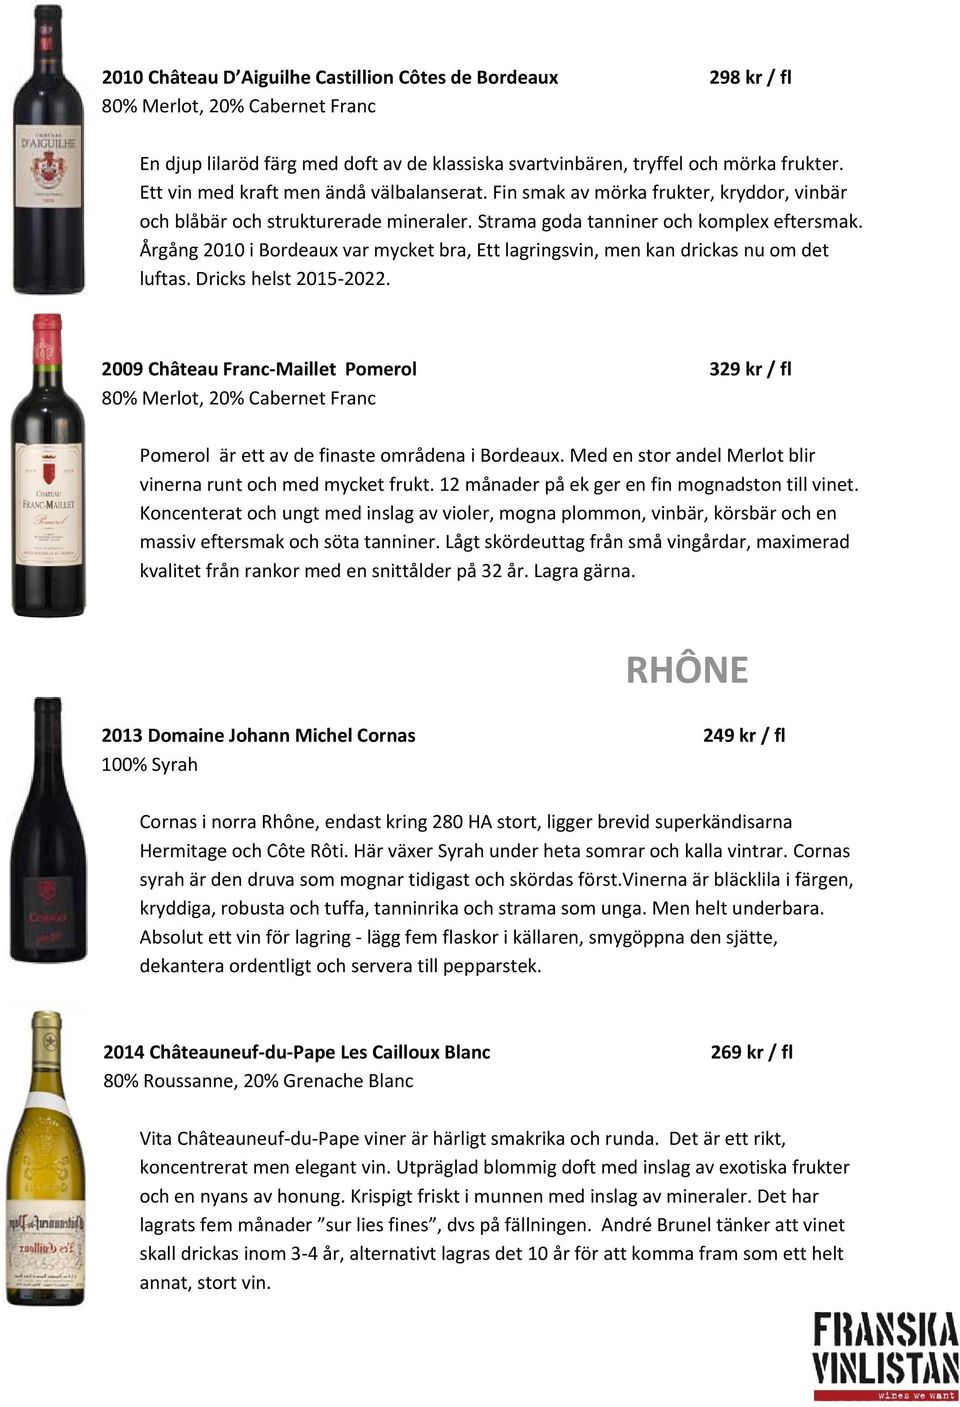 Årgång 2010 i Bordeaux var mycket bra, Ett lagringsvin, men kan drickas nu om det luftas. Dricks helst 2015 2022.